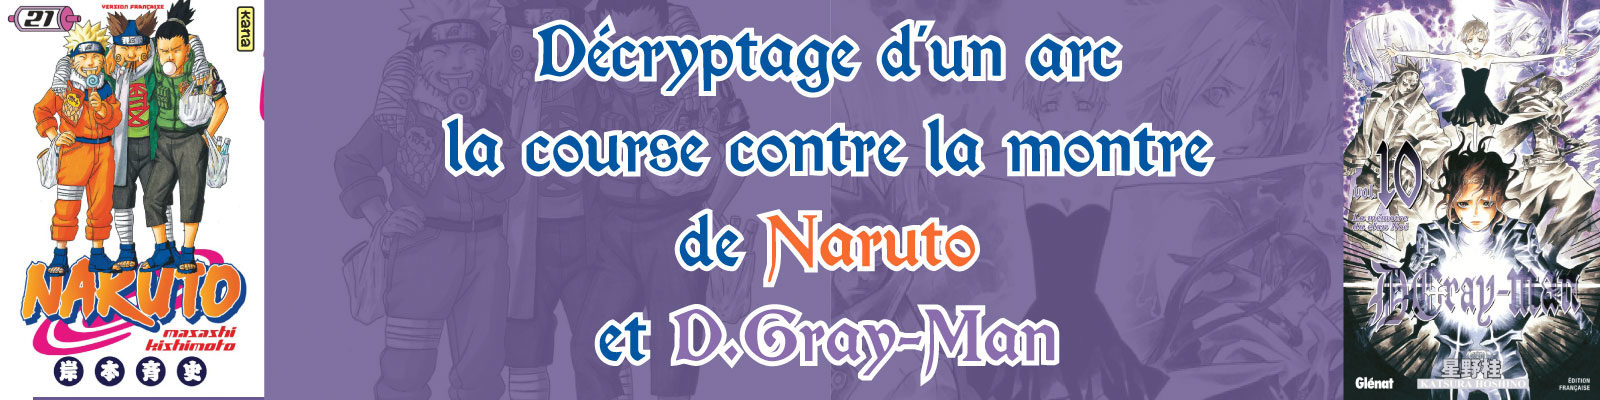 Décryptage Naruto D Gray-Man